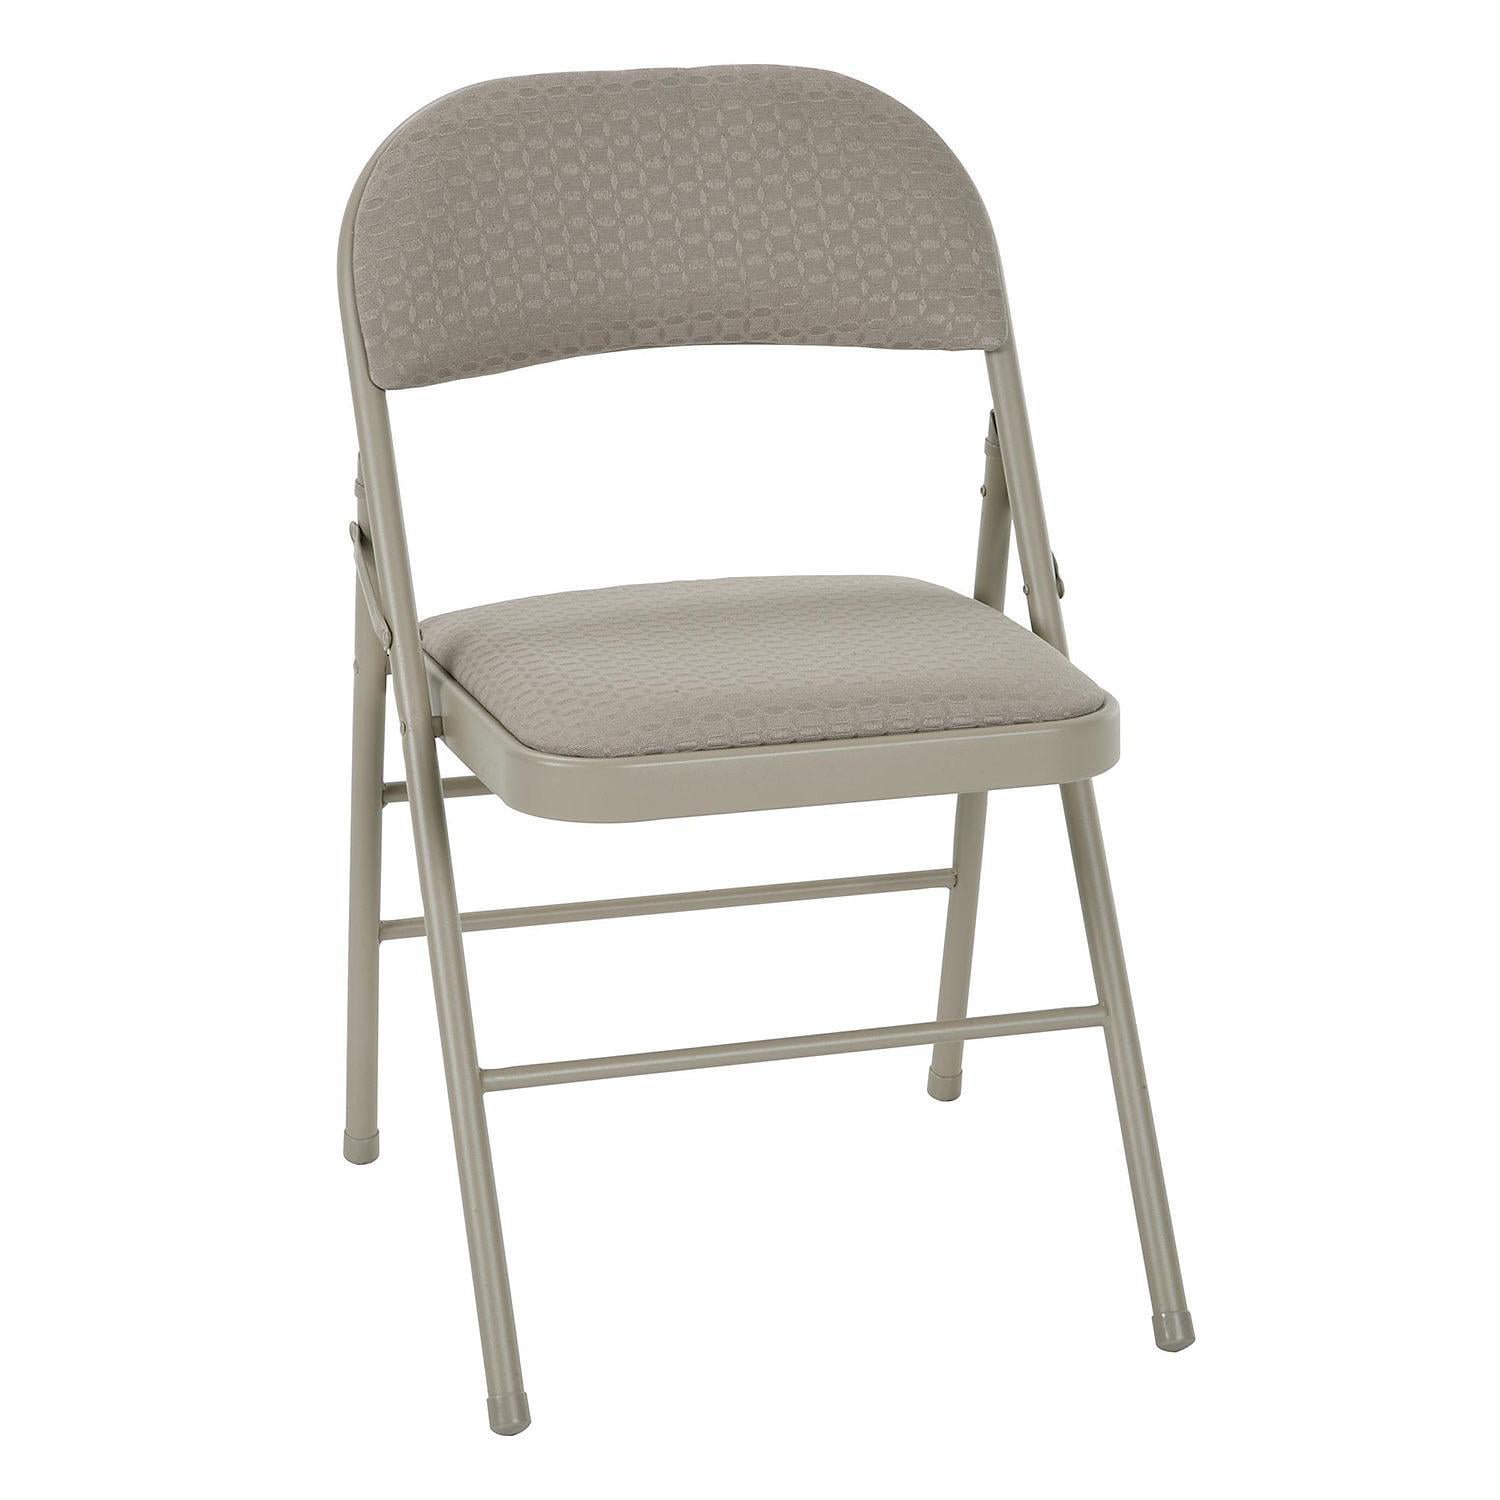 Купить стулья с металлической спинкой. Стул со спинкой. Стул складной металлический со спинкой. Складные мягкие стулья. Складные мягкие стулья со спинкой.